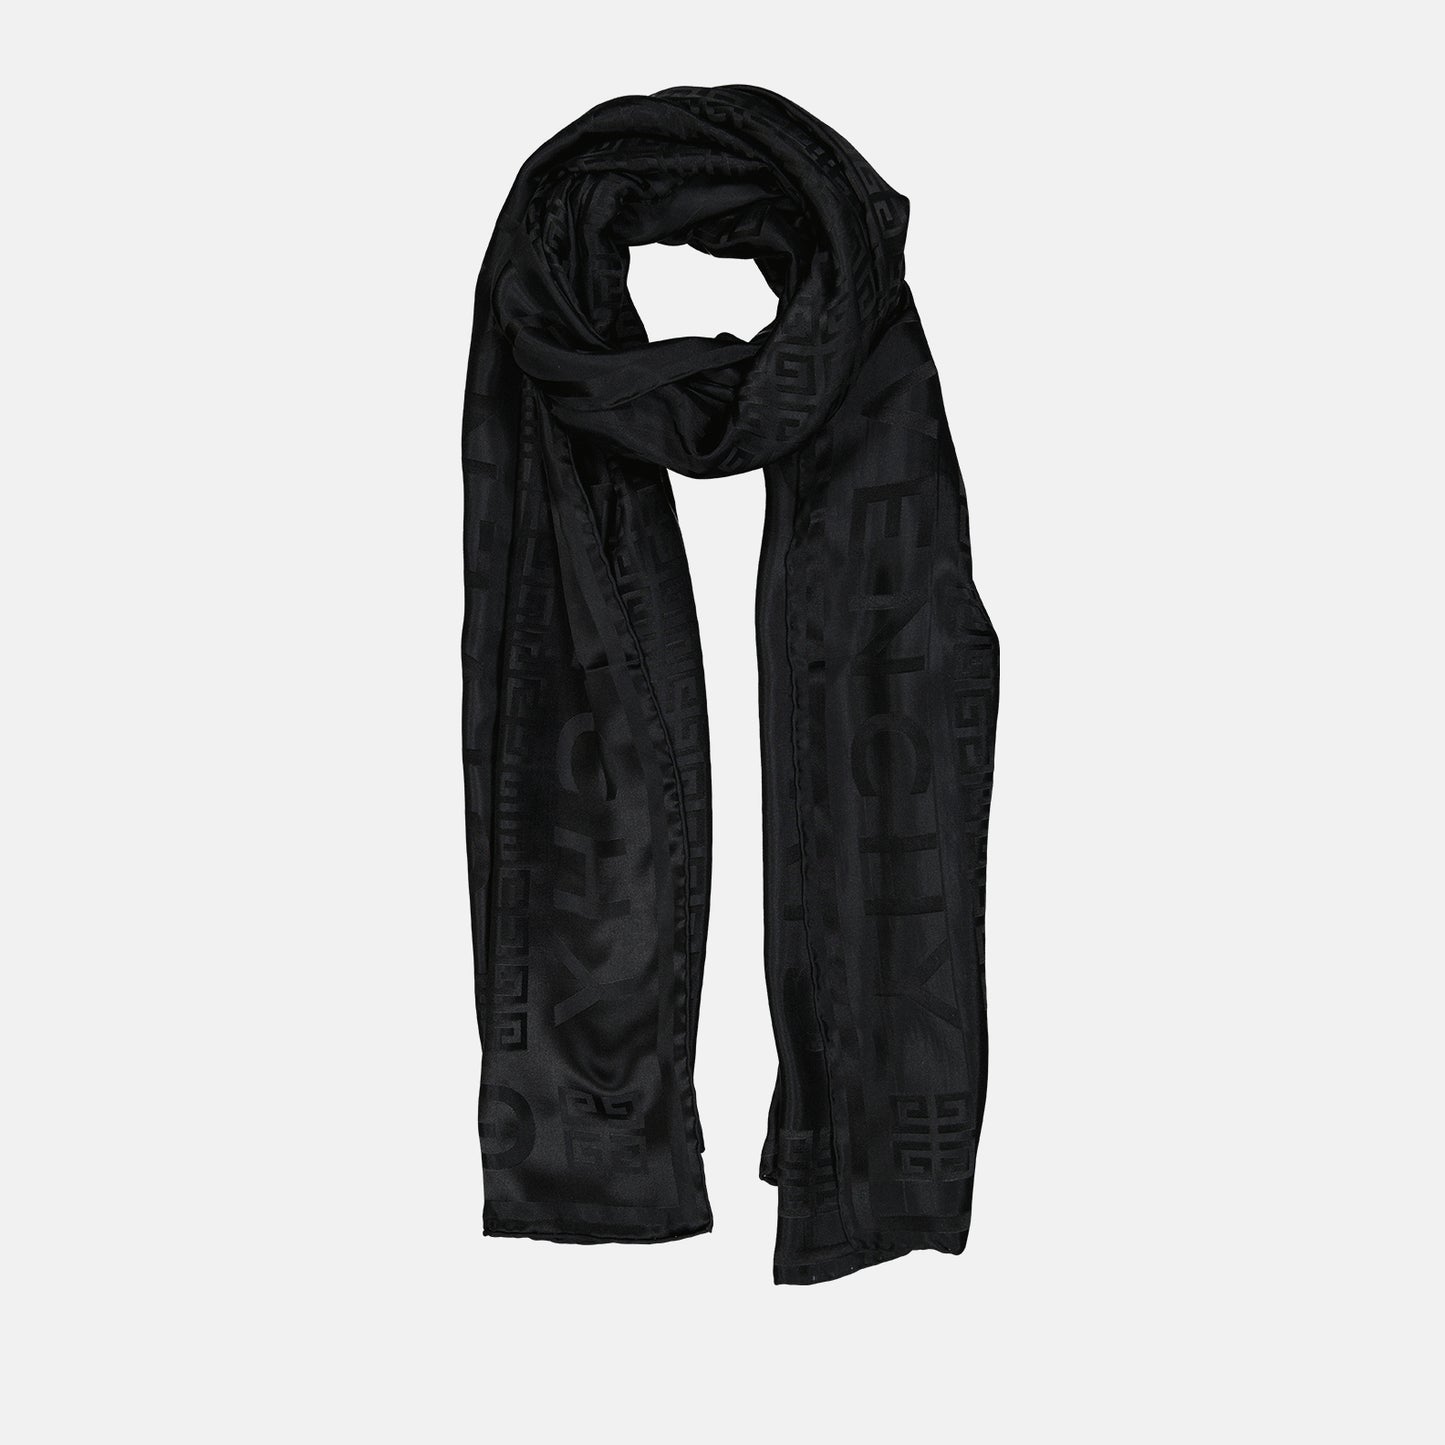 4G silk scarf